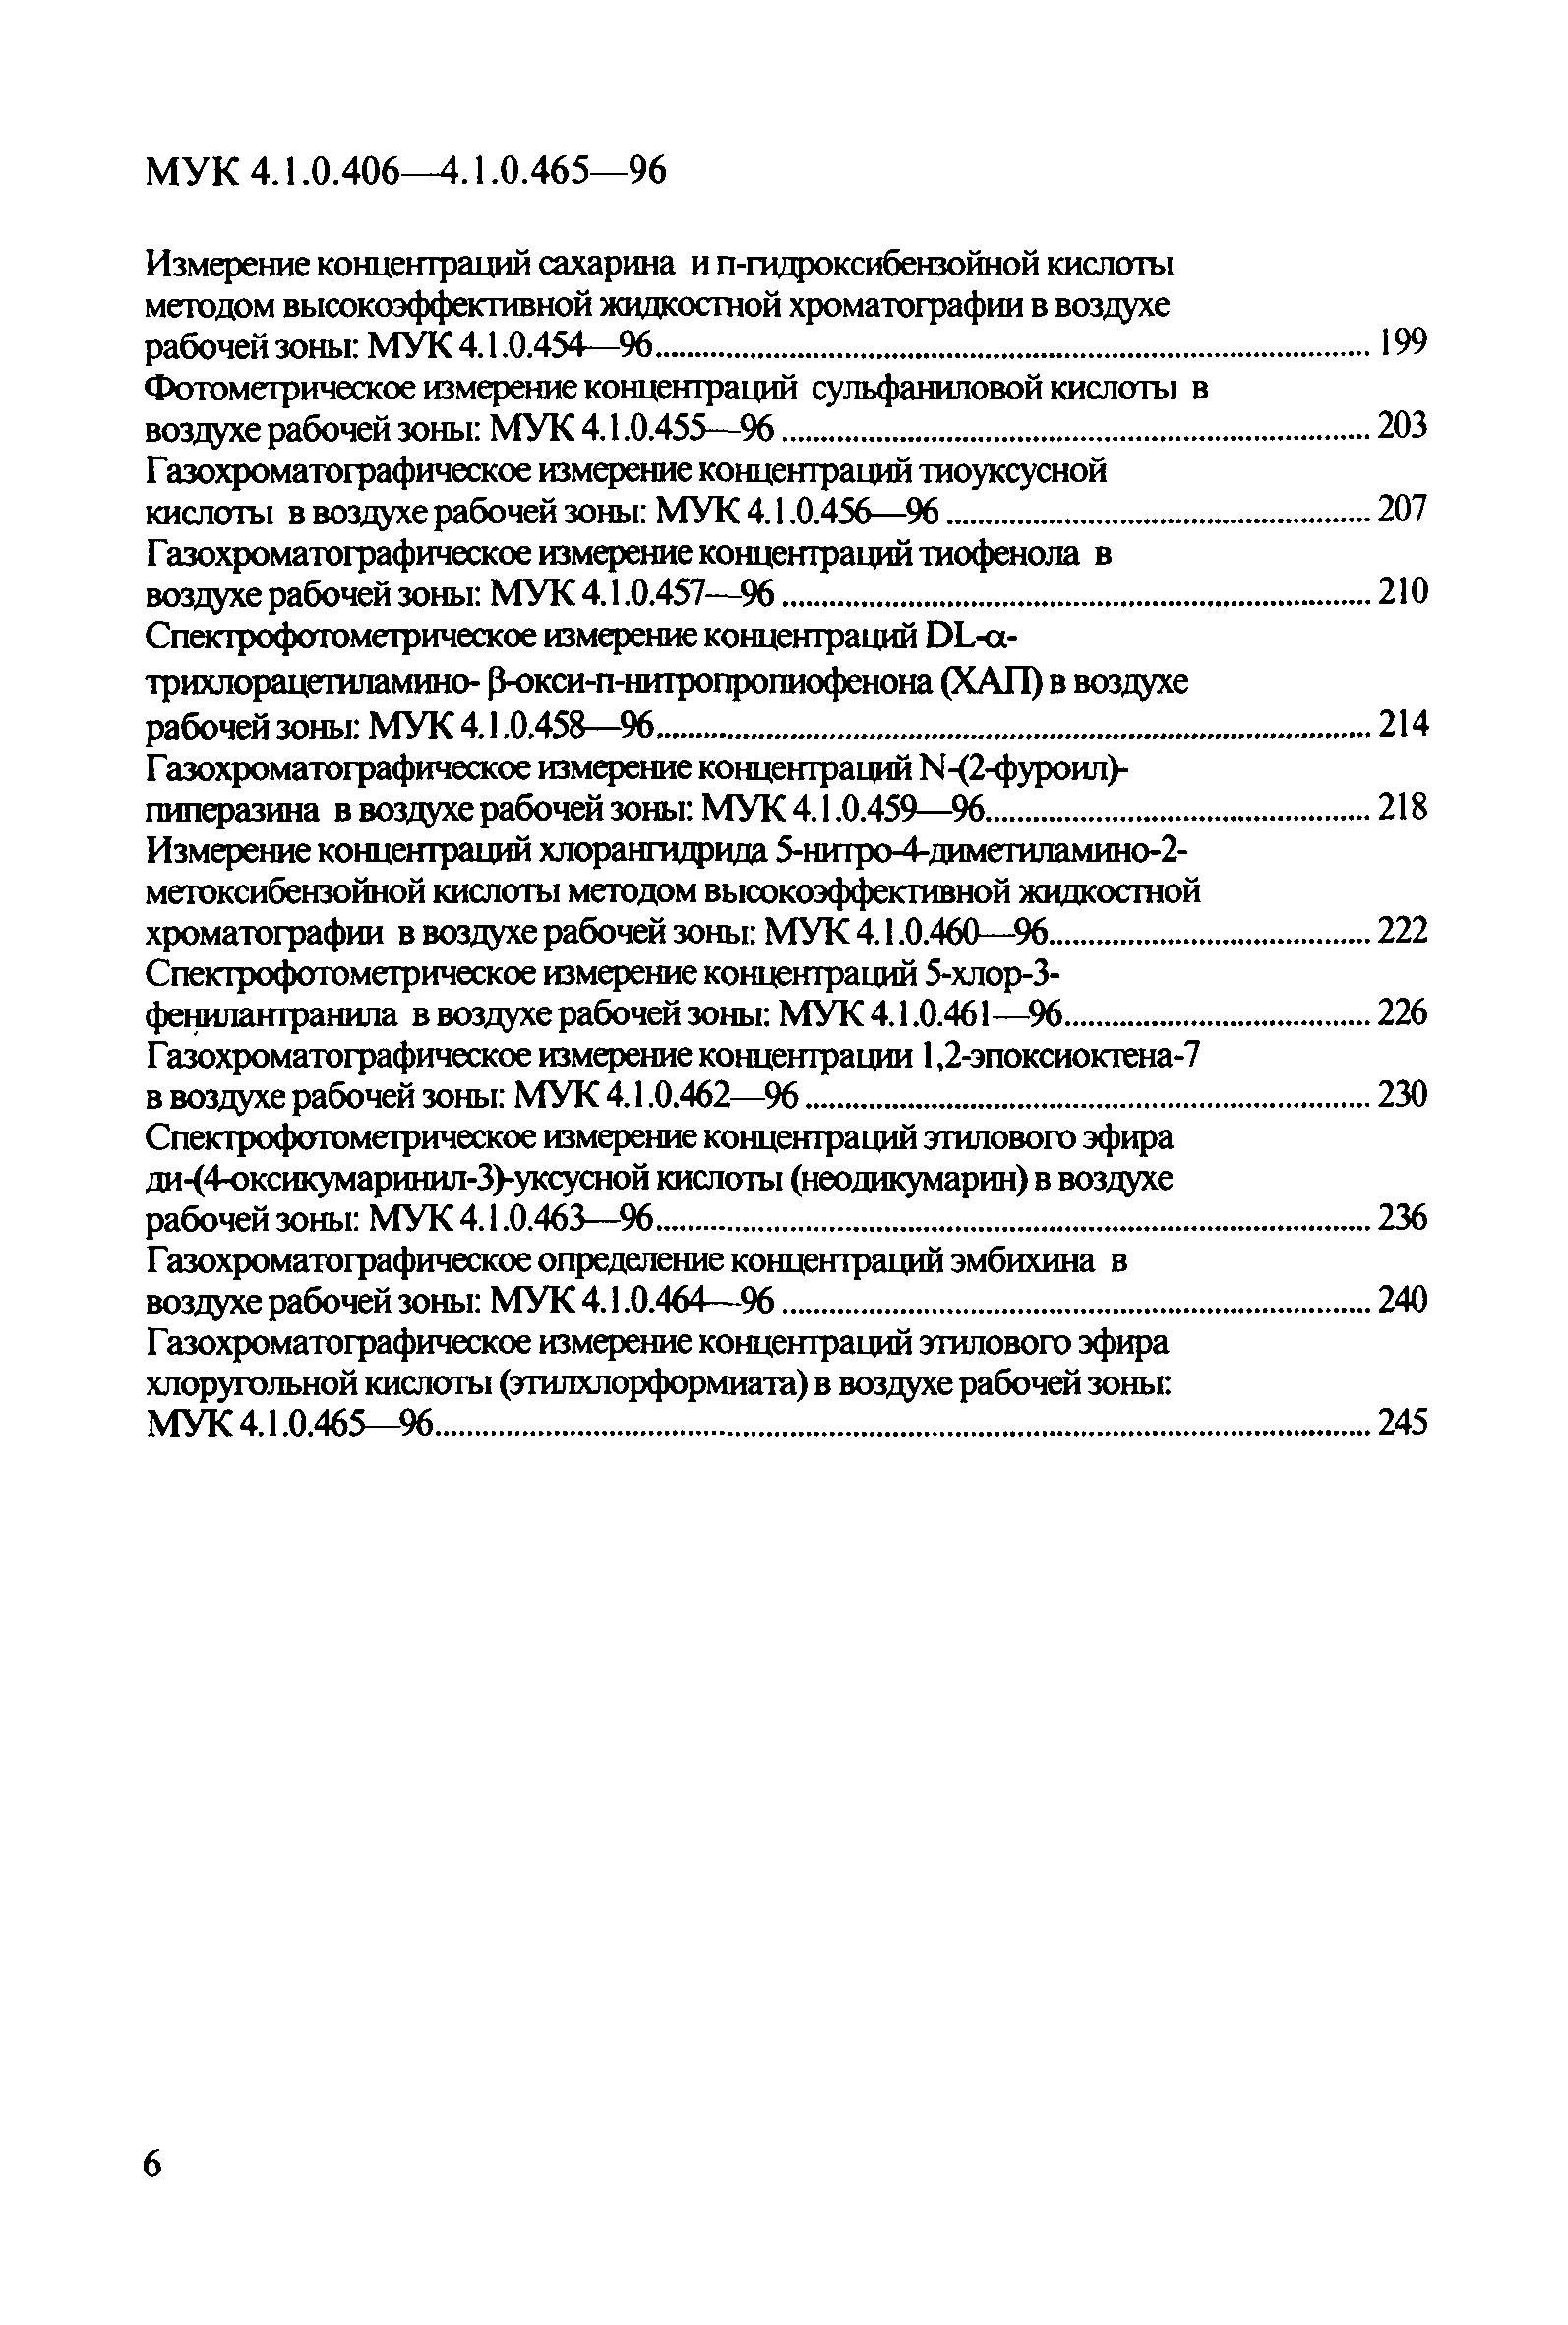 МУК 4.1.0.447-96